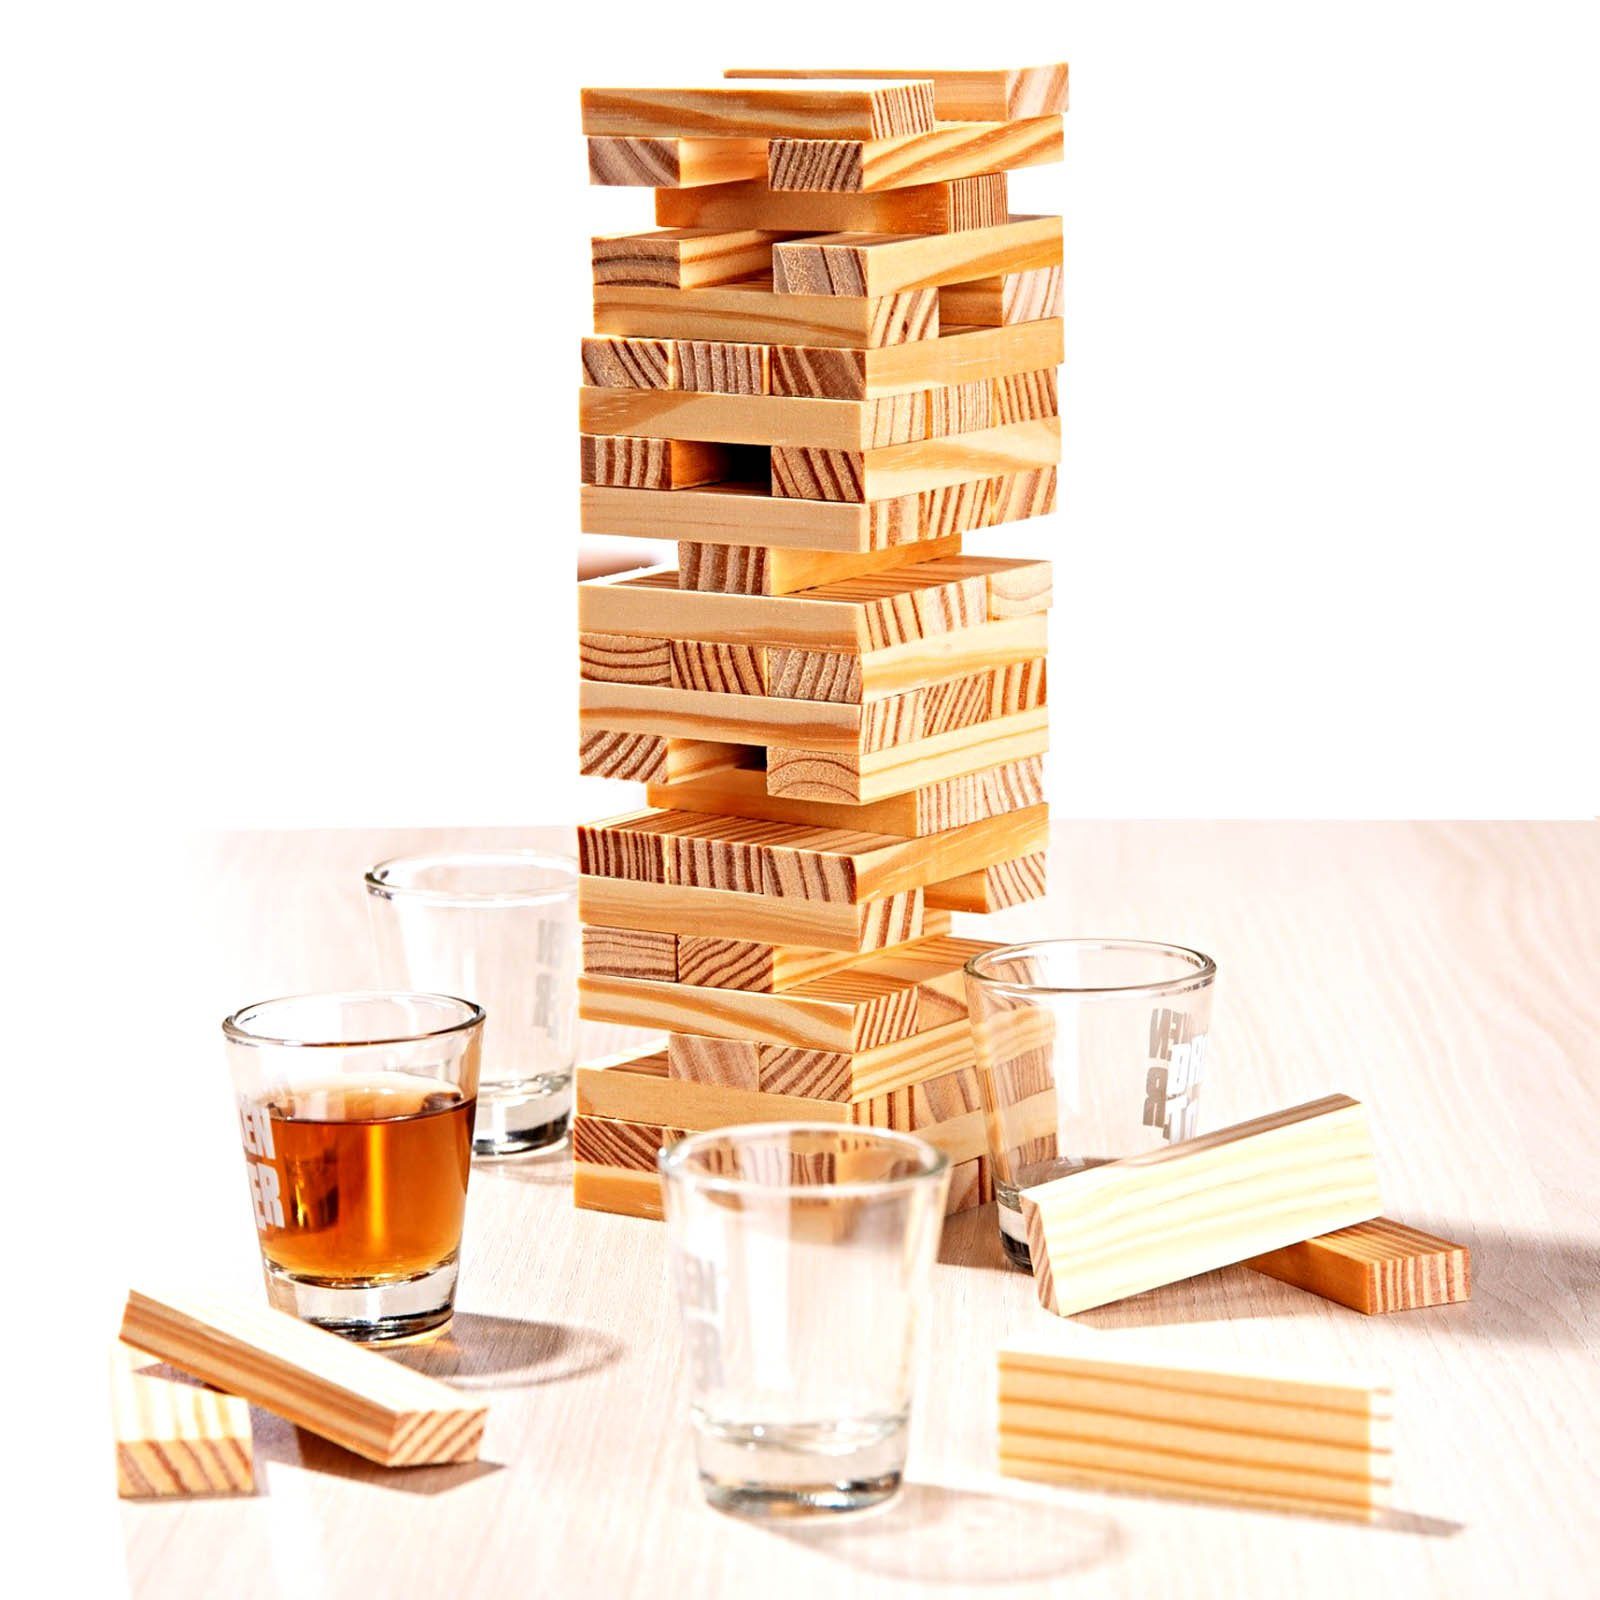 HAC24 Spiel, Gesellschaftsspiel Trinkspiel Wackelturm Trink Spiel Turm Partyspiel für Erwaschsene, Mit 60 Holz Bauklötzen und 4 Shotgläsern